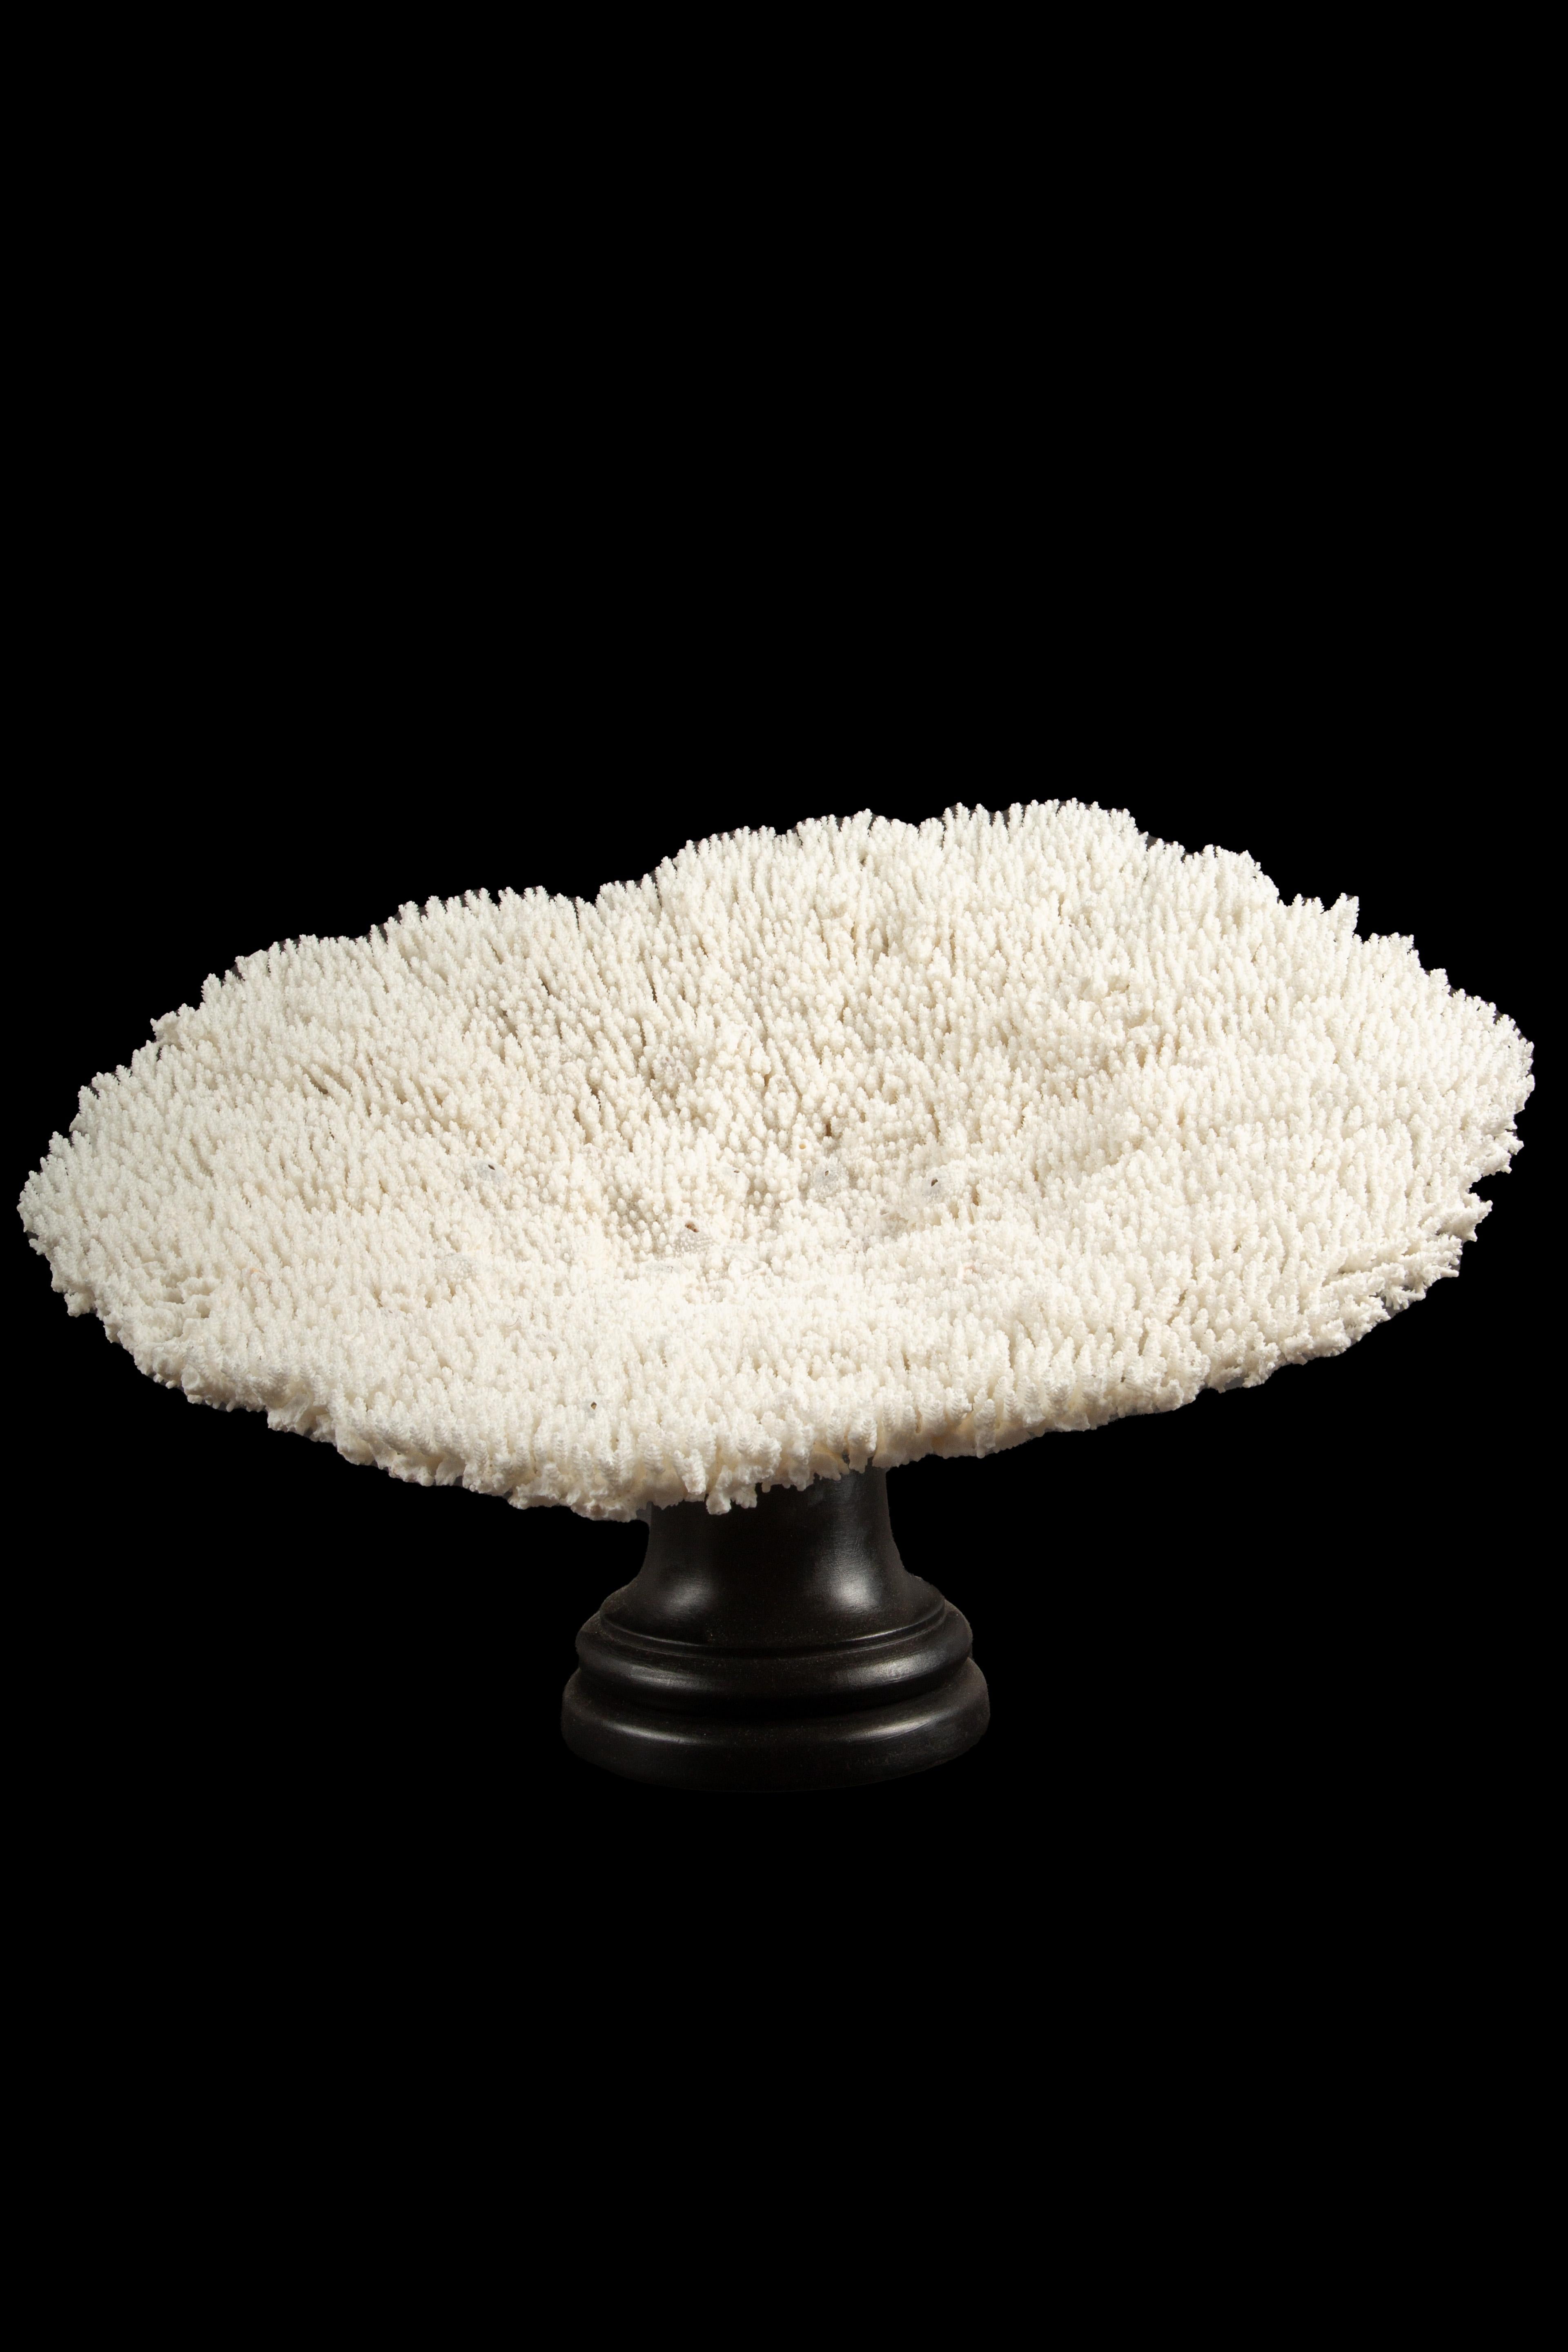 Spécimen de corail de table, délicatement présenté sur une monture en laque noire méticuleusement fabriquée à la main par des Italiens. Ce superbe centre de table allie sans effort l'art de la nature et le savoir-faire artisanal. Le corail blanc